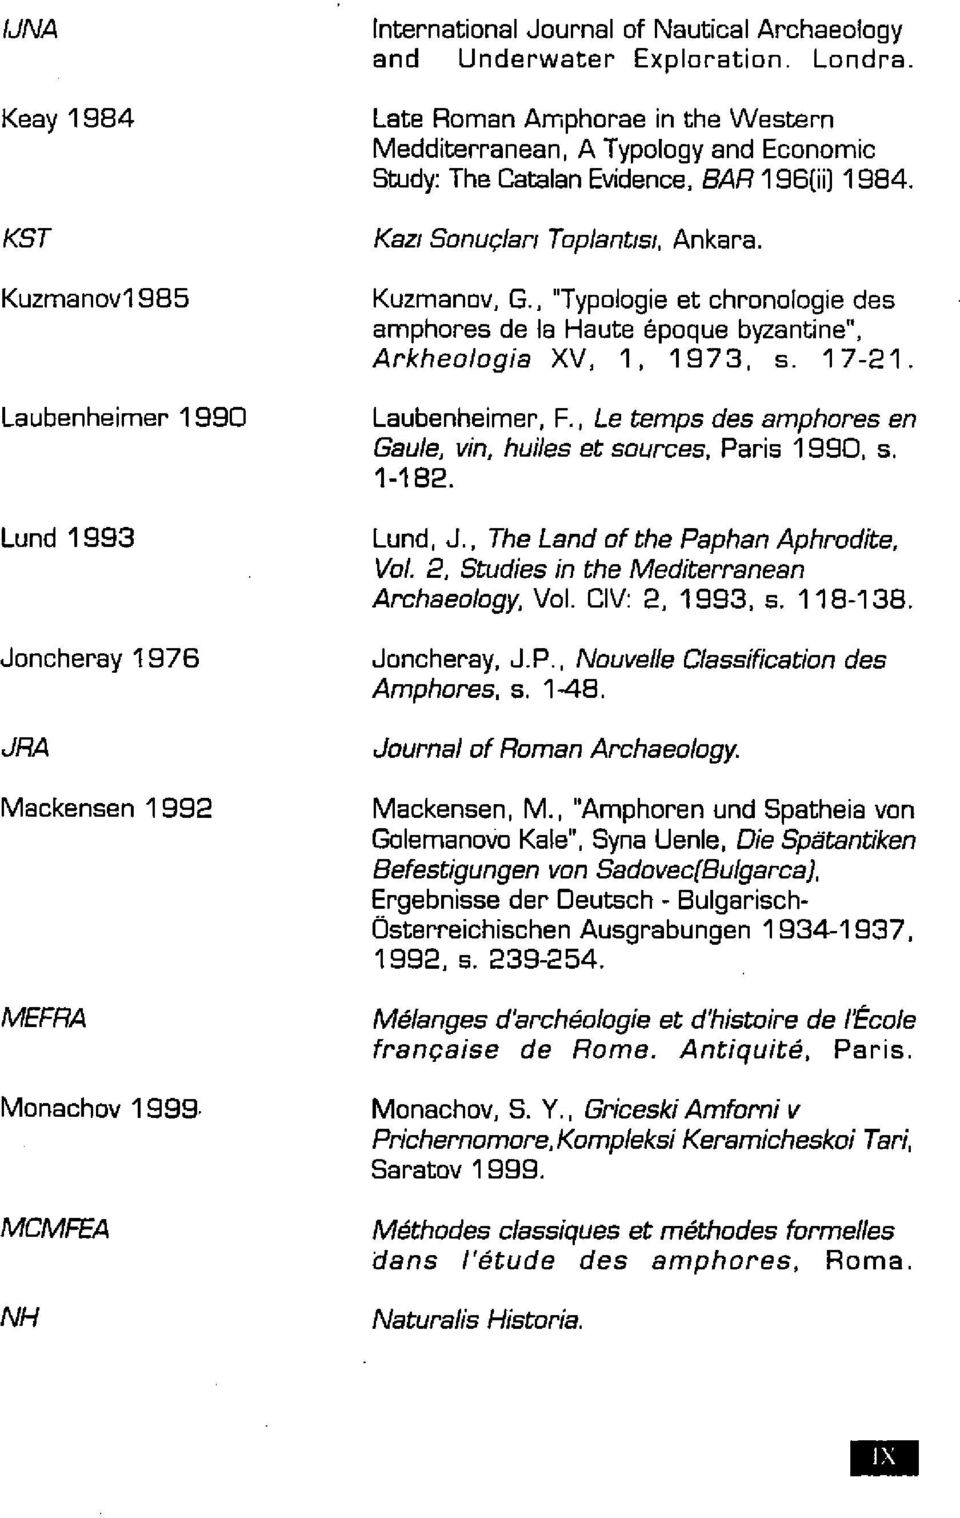 , Le temps des amphores en Gaule, vin. huiles et sources, Paris 1990, s. 1-182. Lund, J., The Land of the Paphan Aphrodite, Vol. 2, Studies in the Mediterranean Archaeology, Vol. CIV: 2, 1993. s. 118-138.